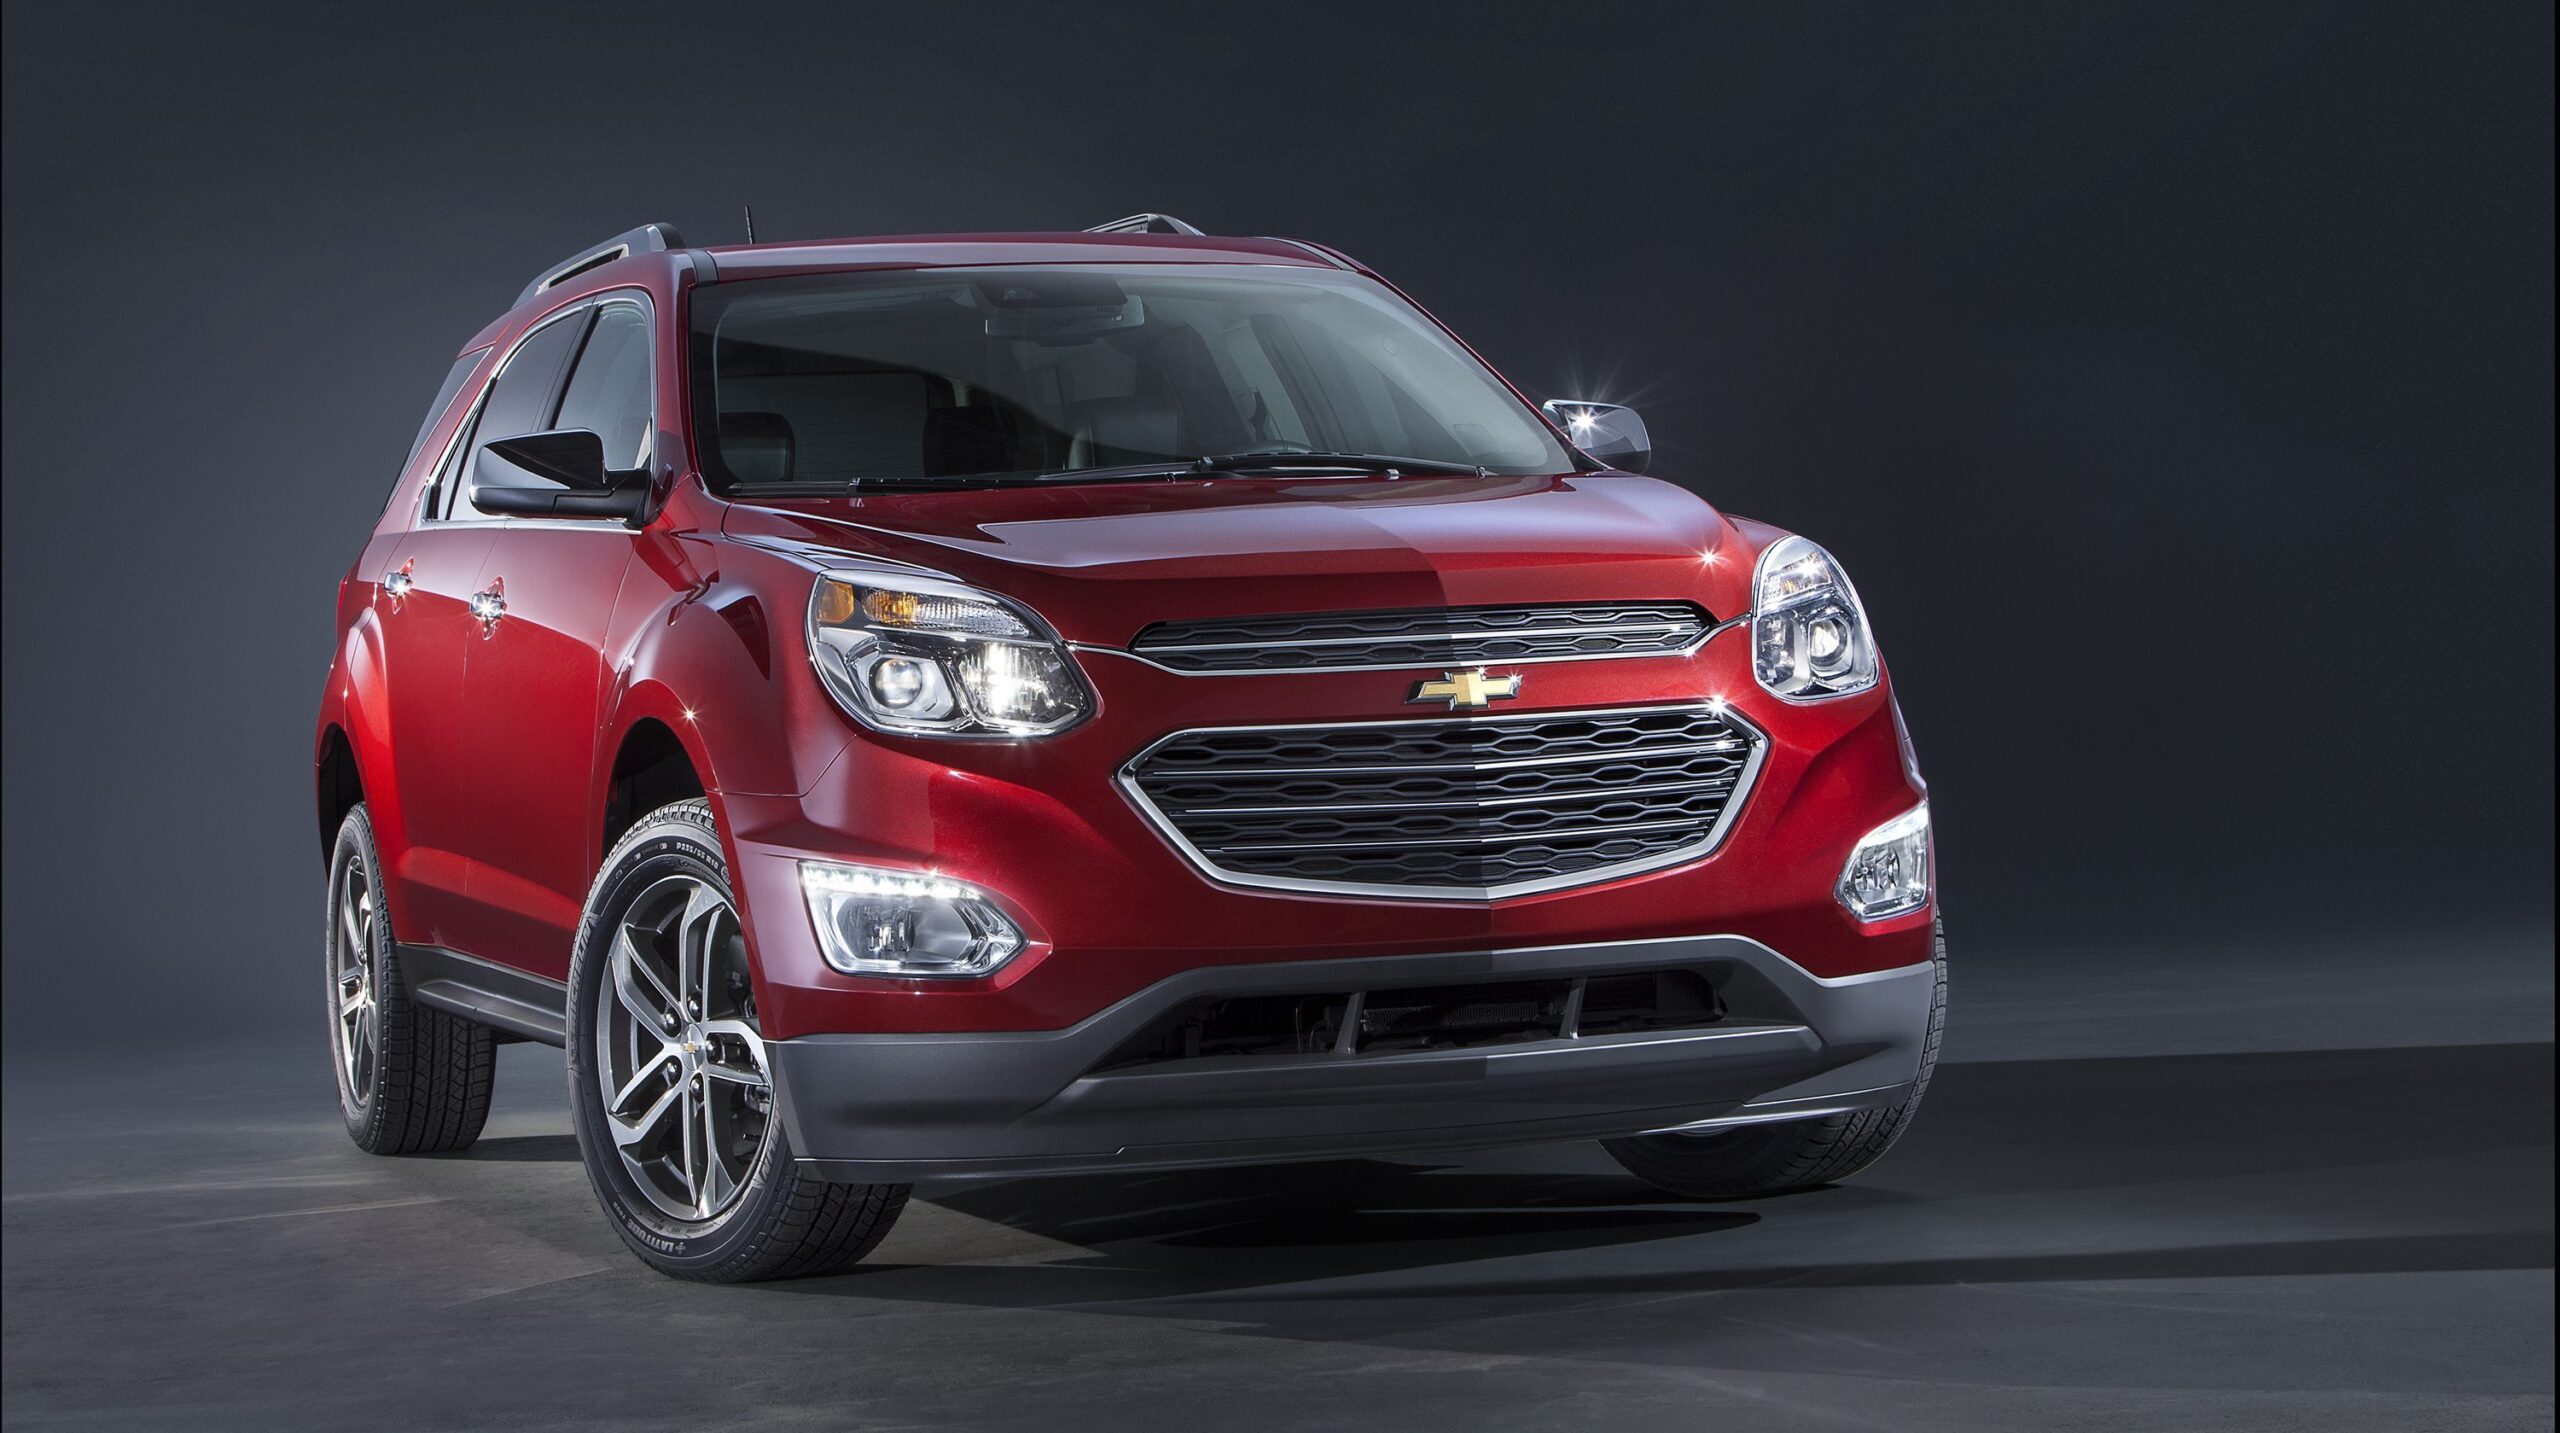 Tecnología, seguridad y diseño caracterizan la línea de vehículos Premium de Chevrolet